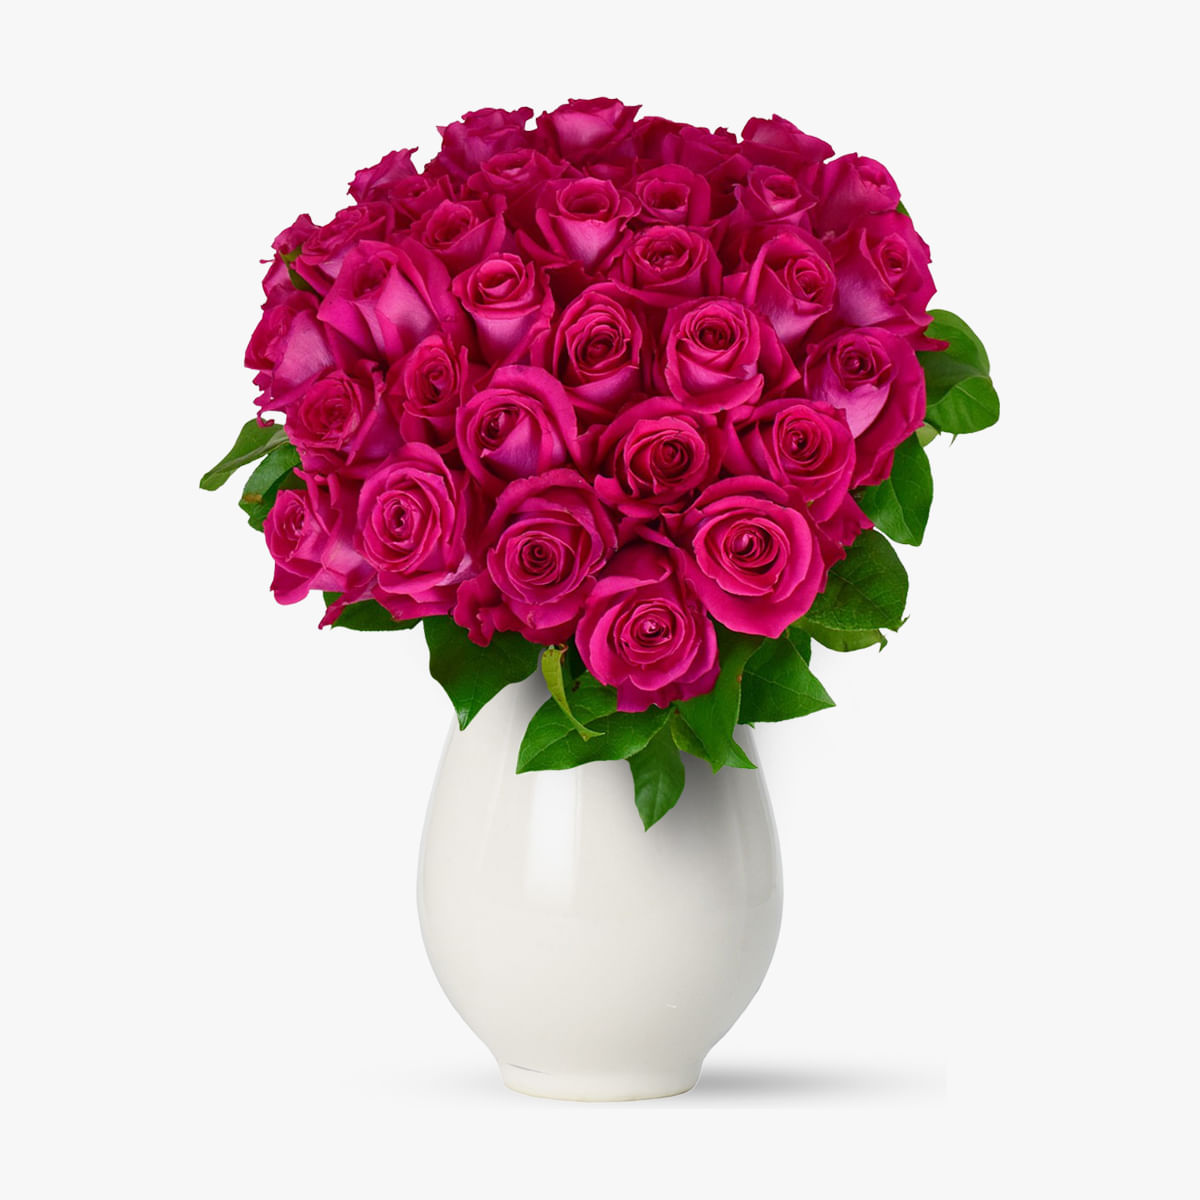 Buchet de 45 trandafiri roz floria.ro